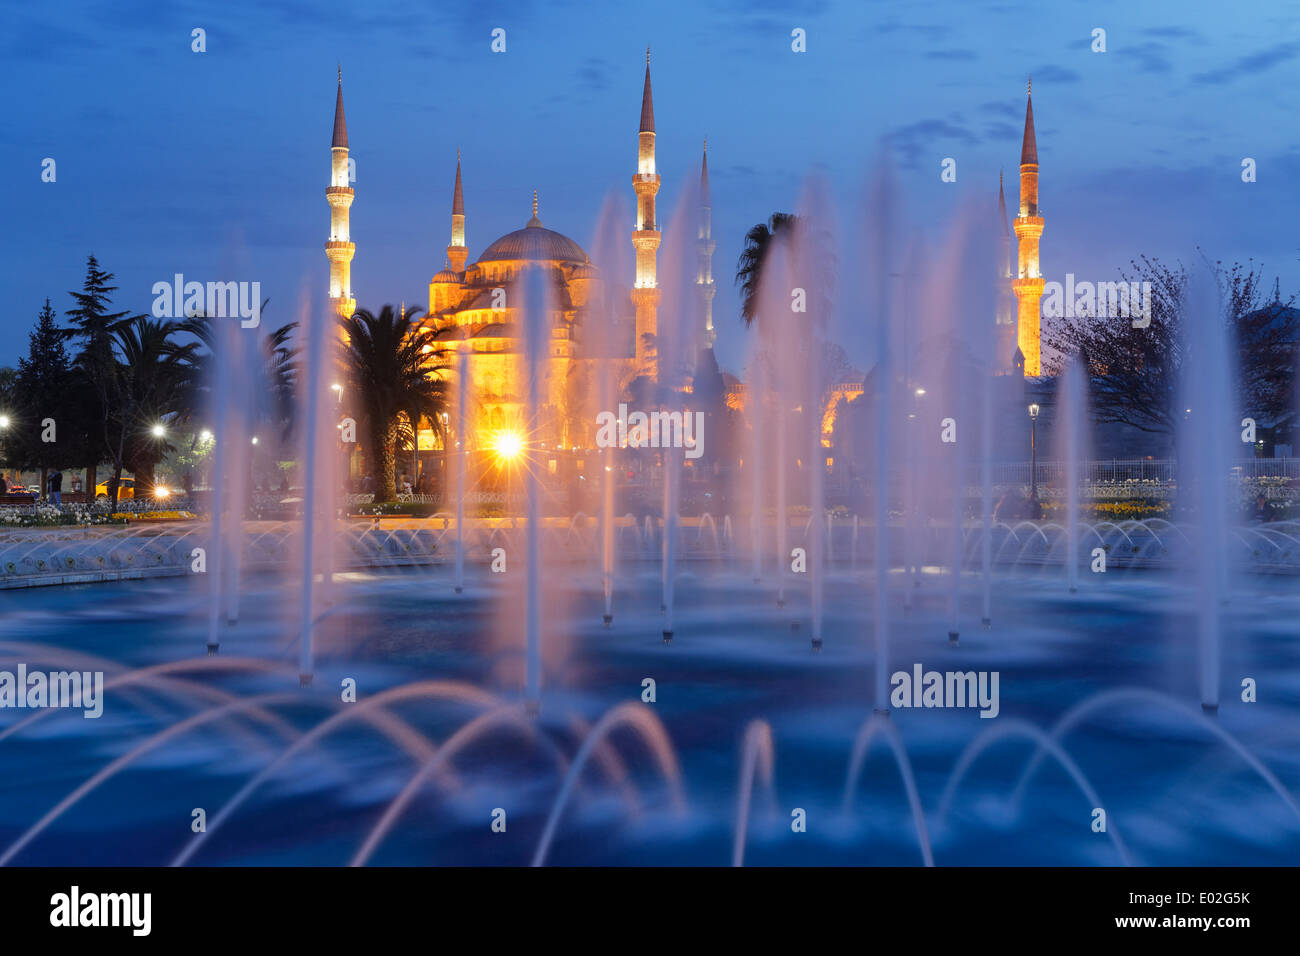 Blaue Moschee, Sultan Ahmed Mosque, Sultanahmet Camii, Brunnen in Sultanahmed Park, Sultanahmet, Istanbul, Europäische Side, Türkei Stockfoto